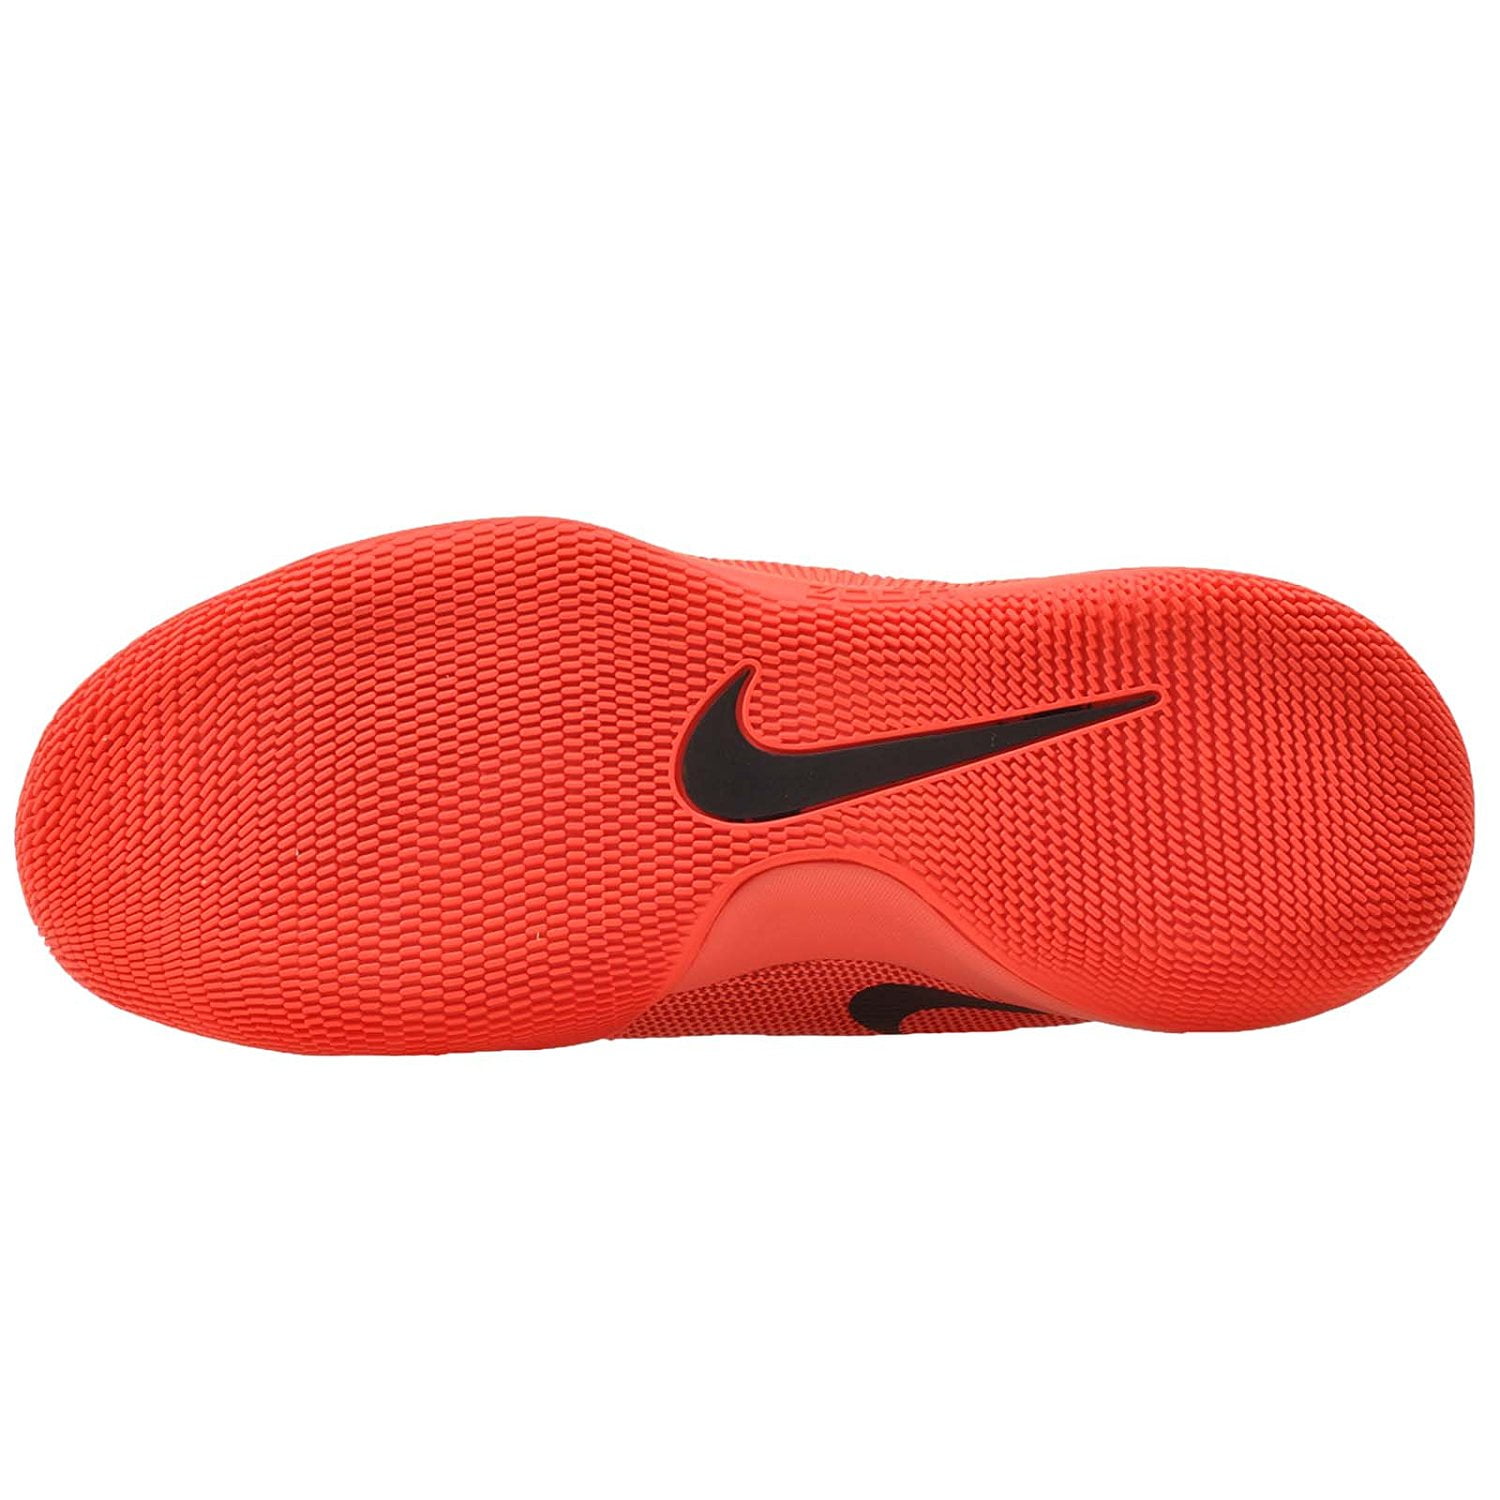 paquete teléfono Extracción Nike Men's Hypershift Basketball Shoes-University Red - Walmart.com